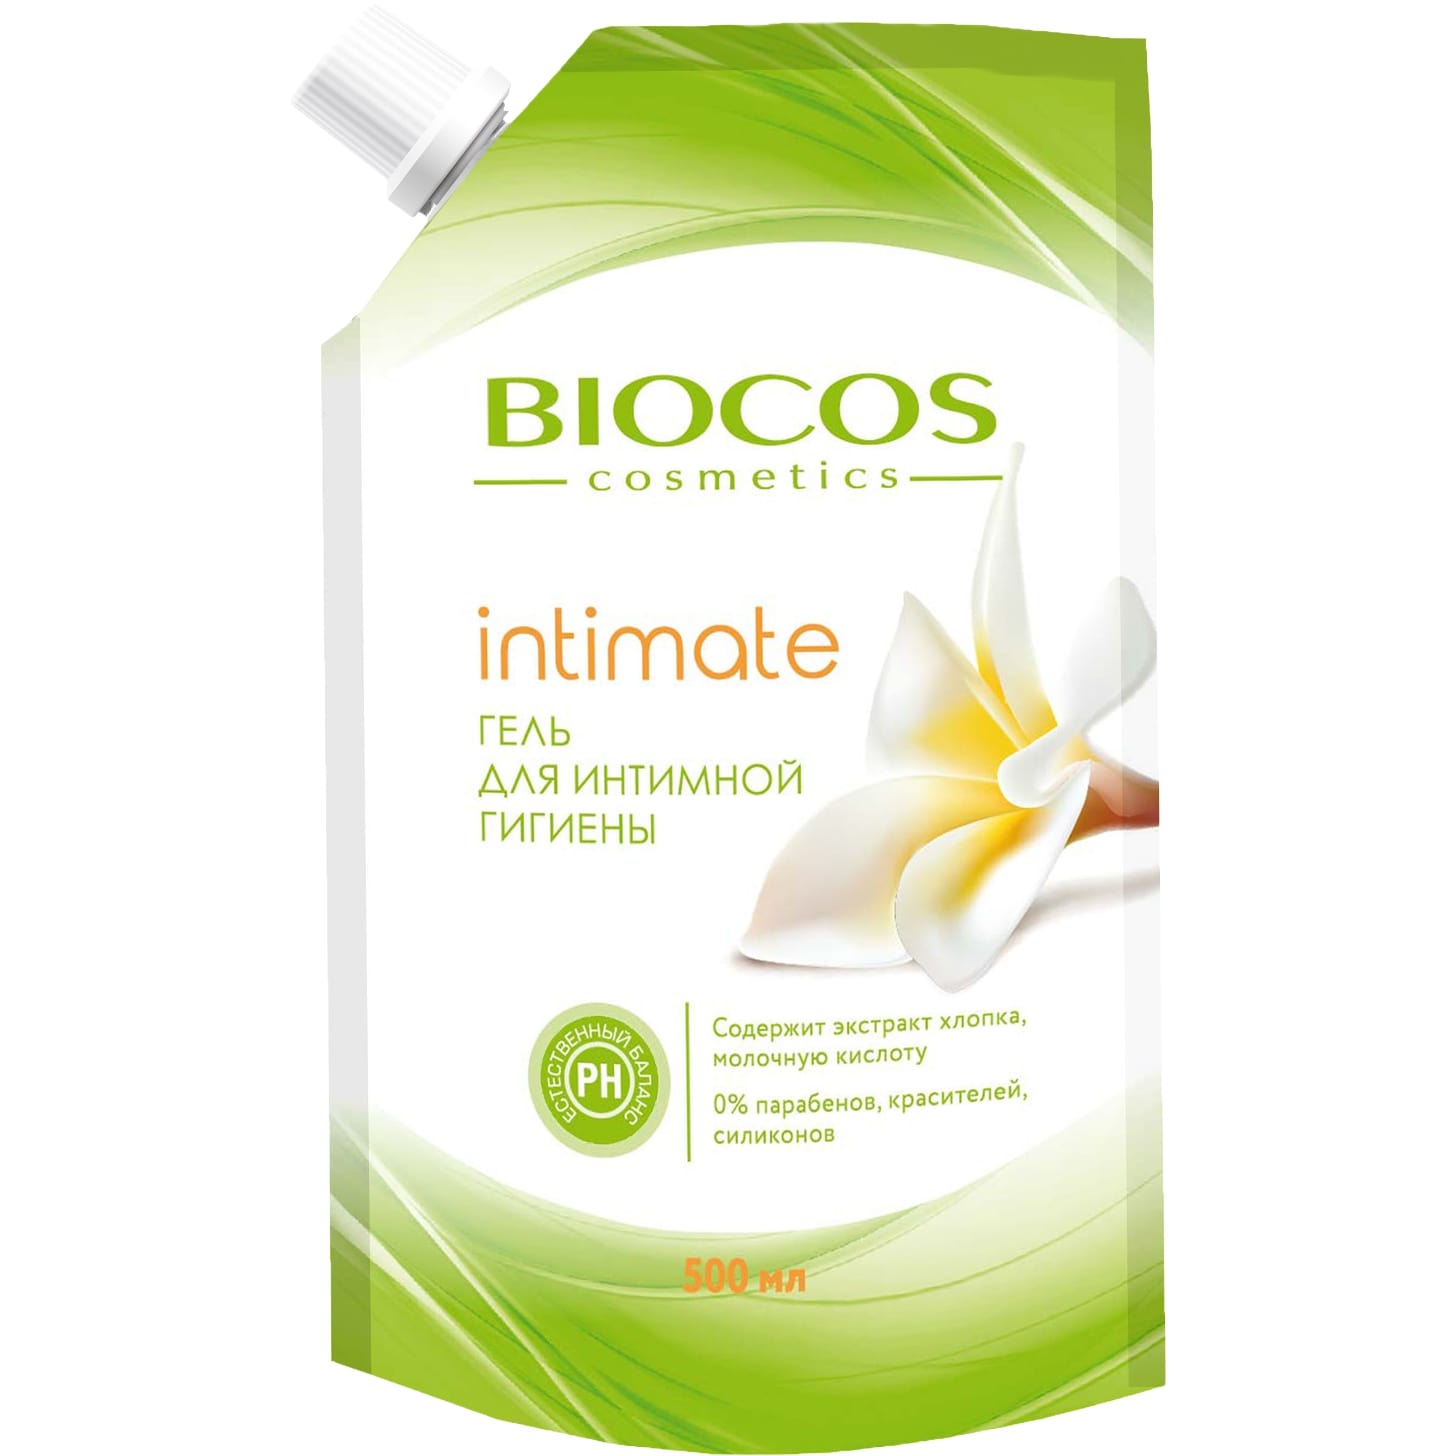 Гель для интимной гигиены BioCos intimate с экстрактом хлопка и молочной кислотой 500 мл пилинг легкий для лица с молочной кислотой 100 мл